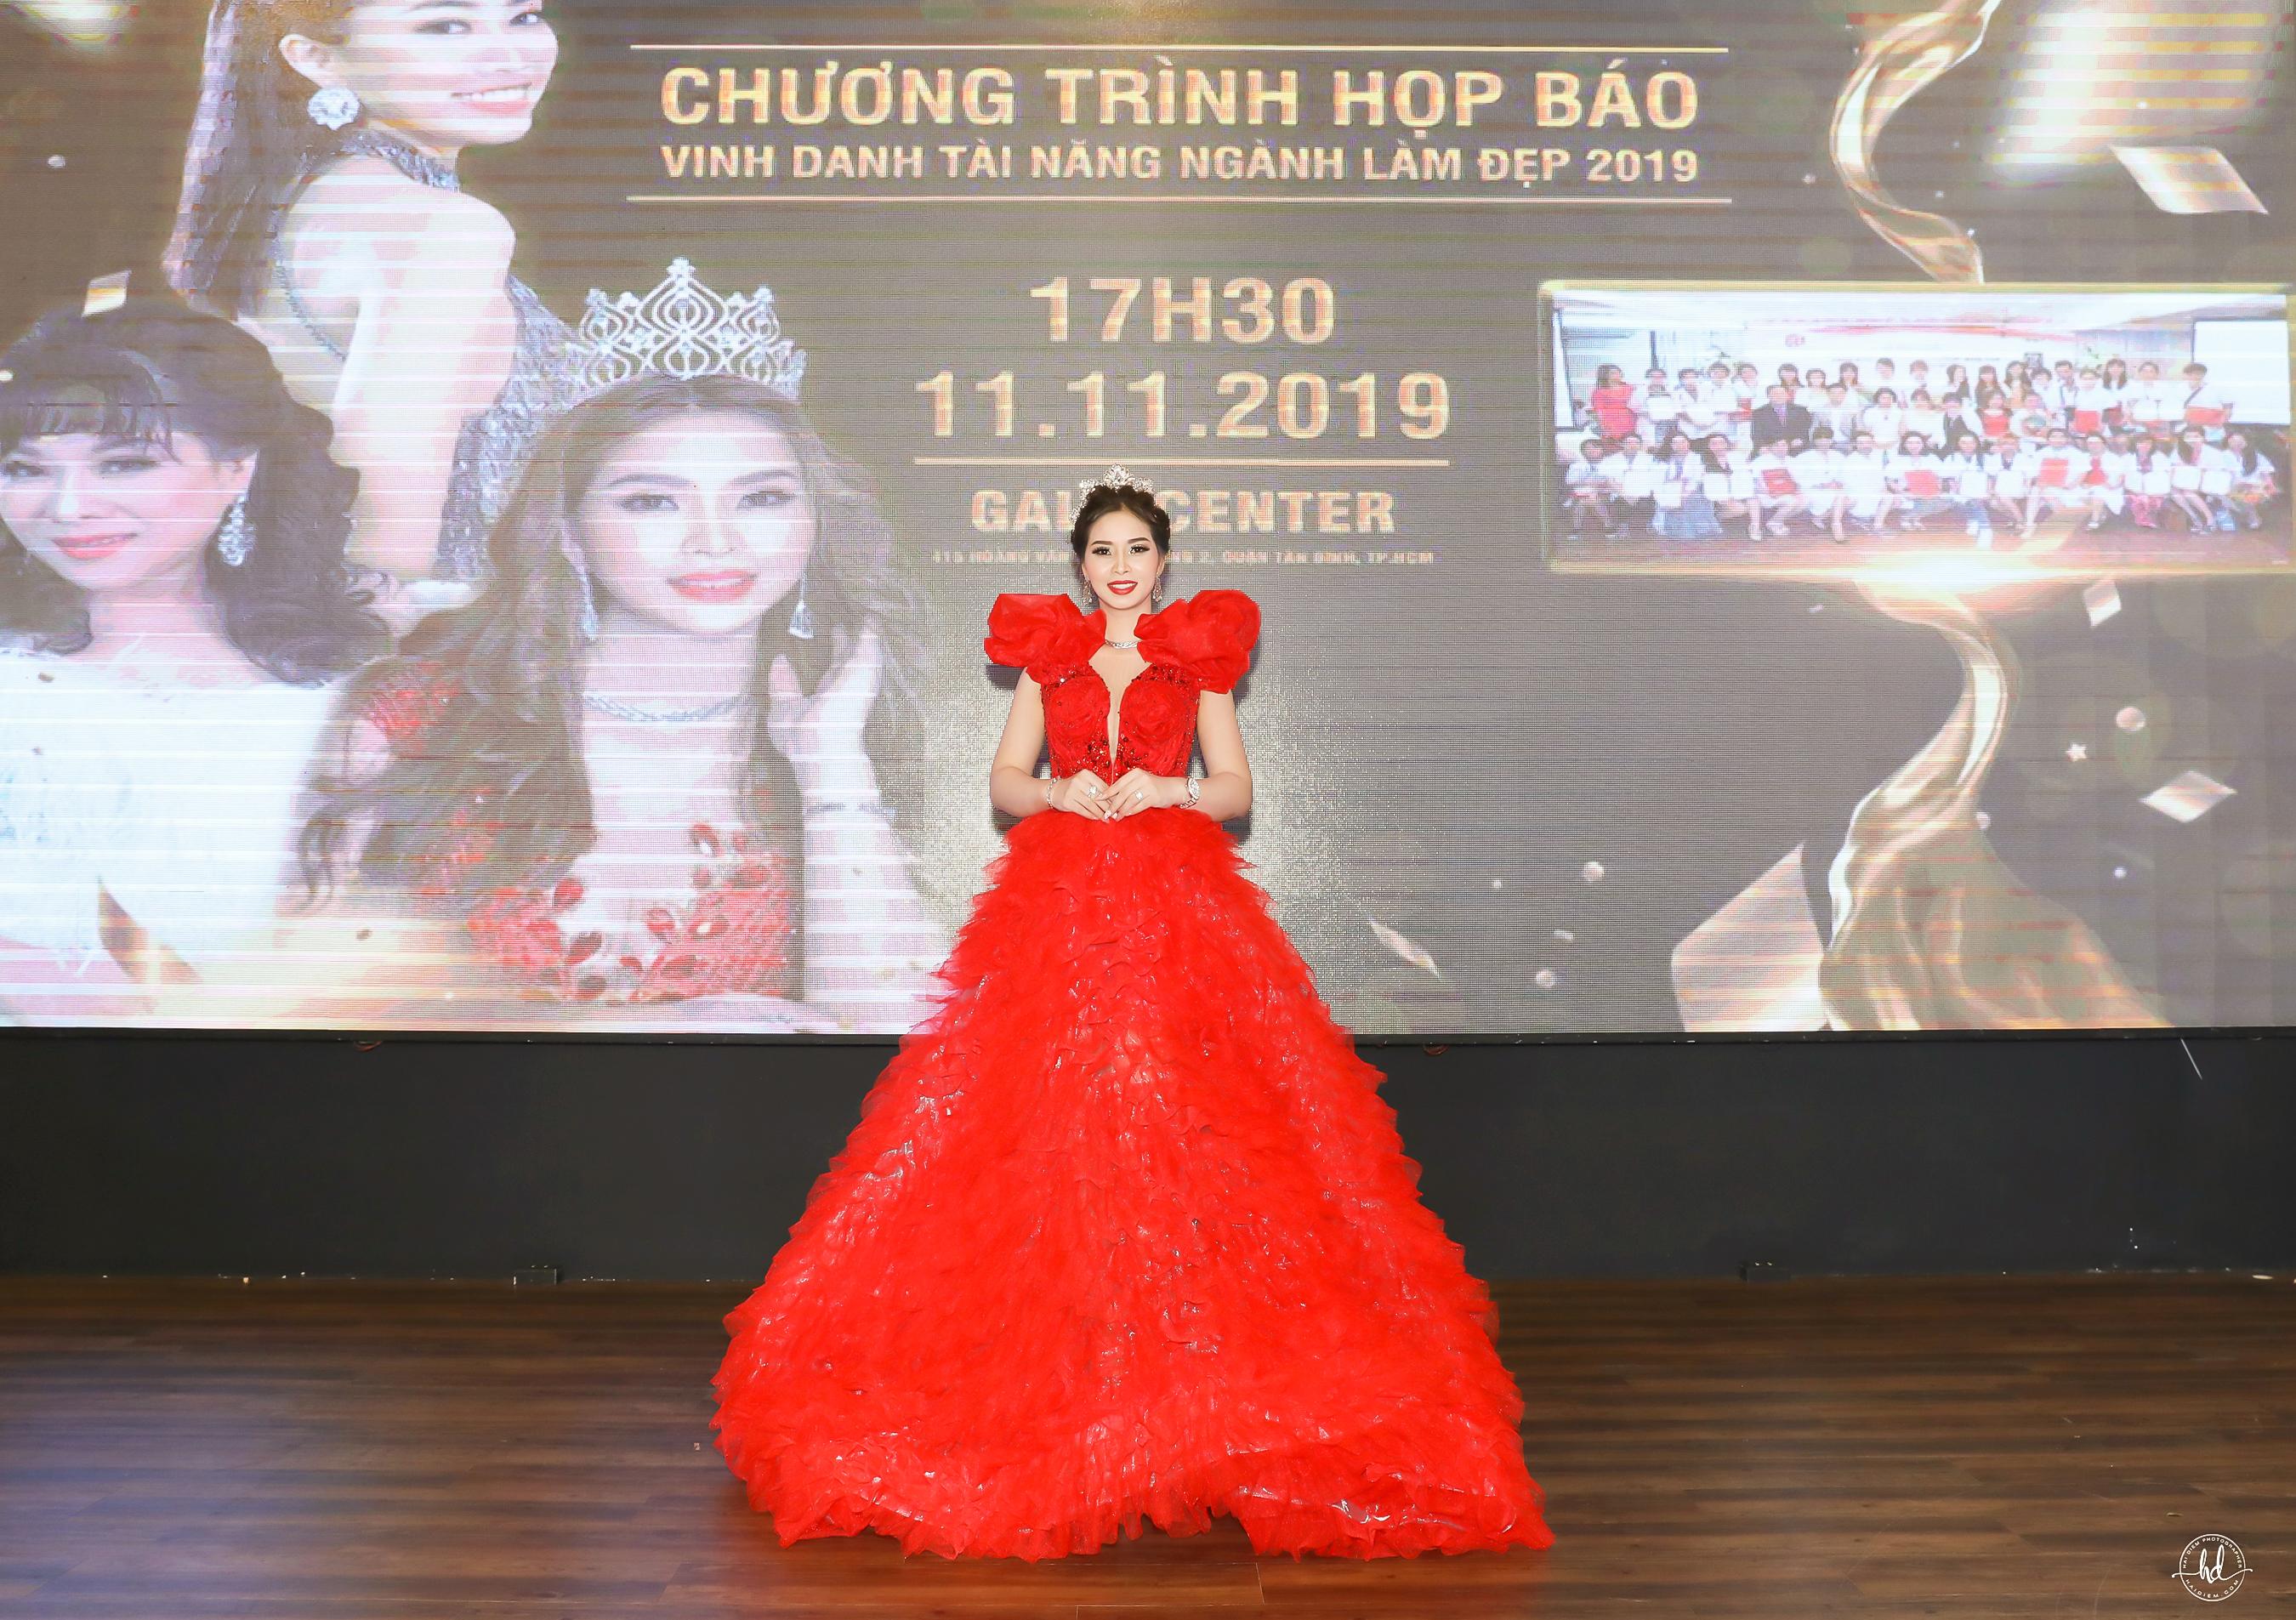 Hoa hậu Vũ Thanh Thảo bất ngờ ra mắt sân chơi riêng cho ngành làm đẹp